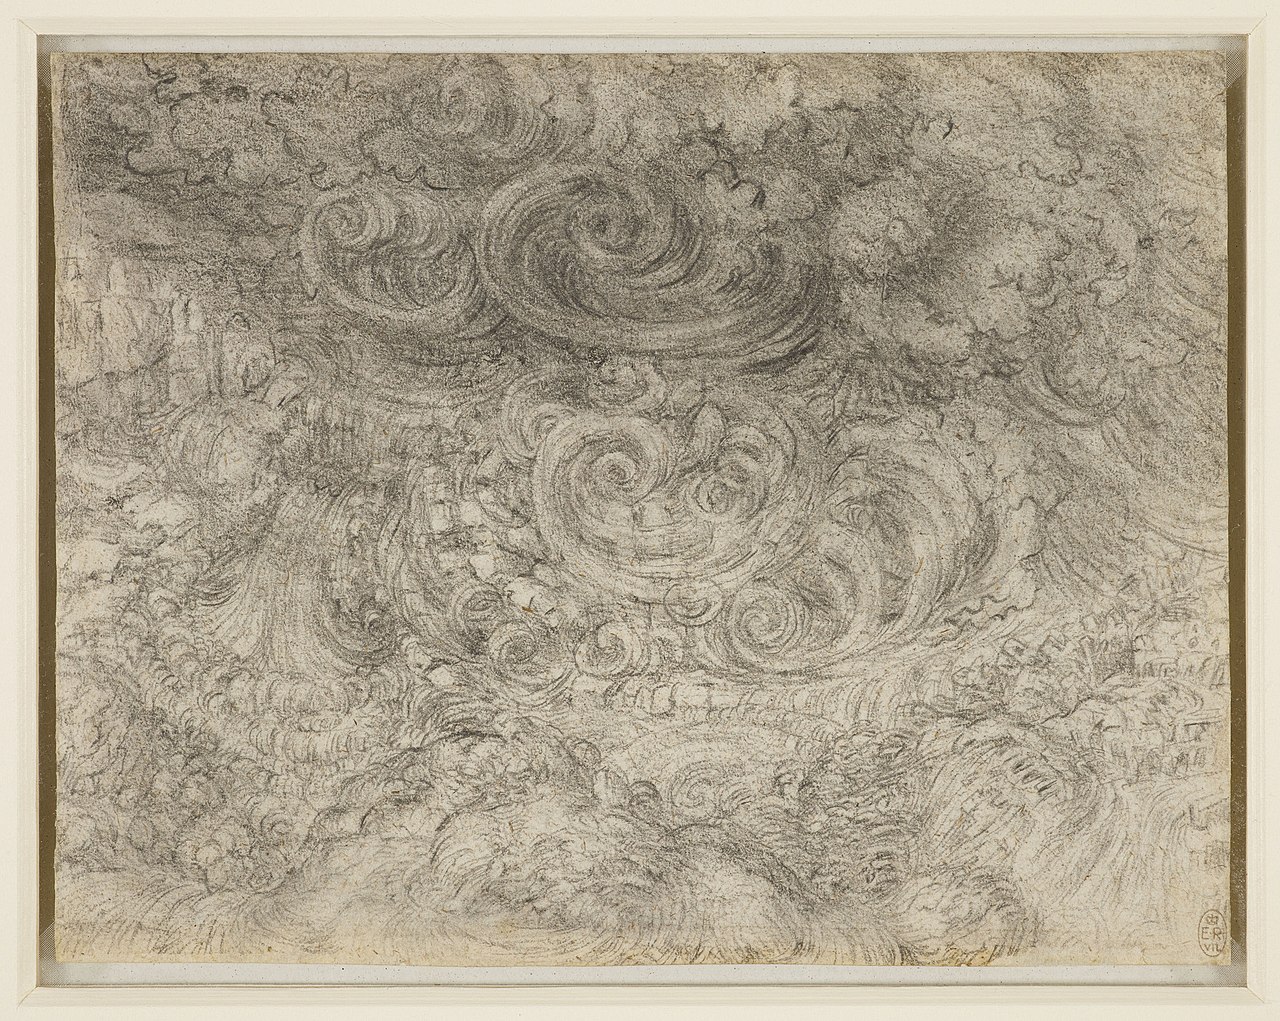 Un diluvio de Leonardo da Vinci c.1517-18. Crédito de la imagen: dominio público